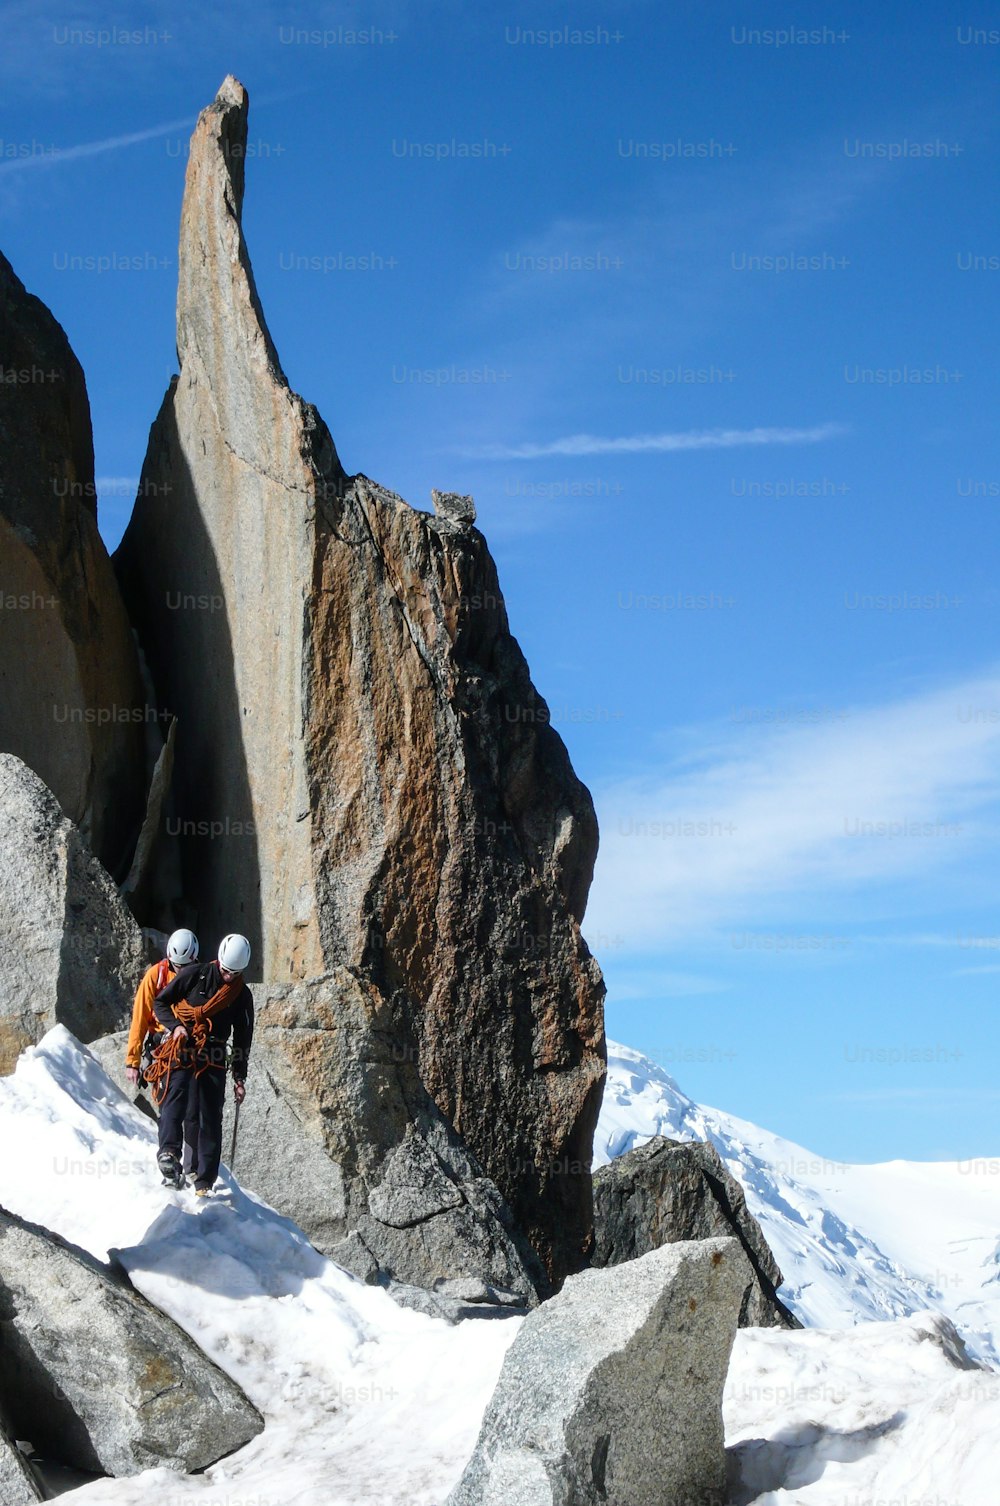 guía de montaña y un cliente masculino en una cresta rocosa que se dirige hacia una alta cumbre en los Alpes franceses cerca de Chamonix en un hermoso día de verano